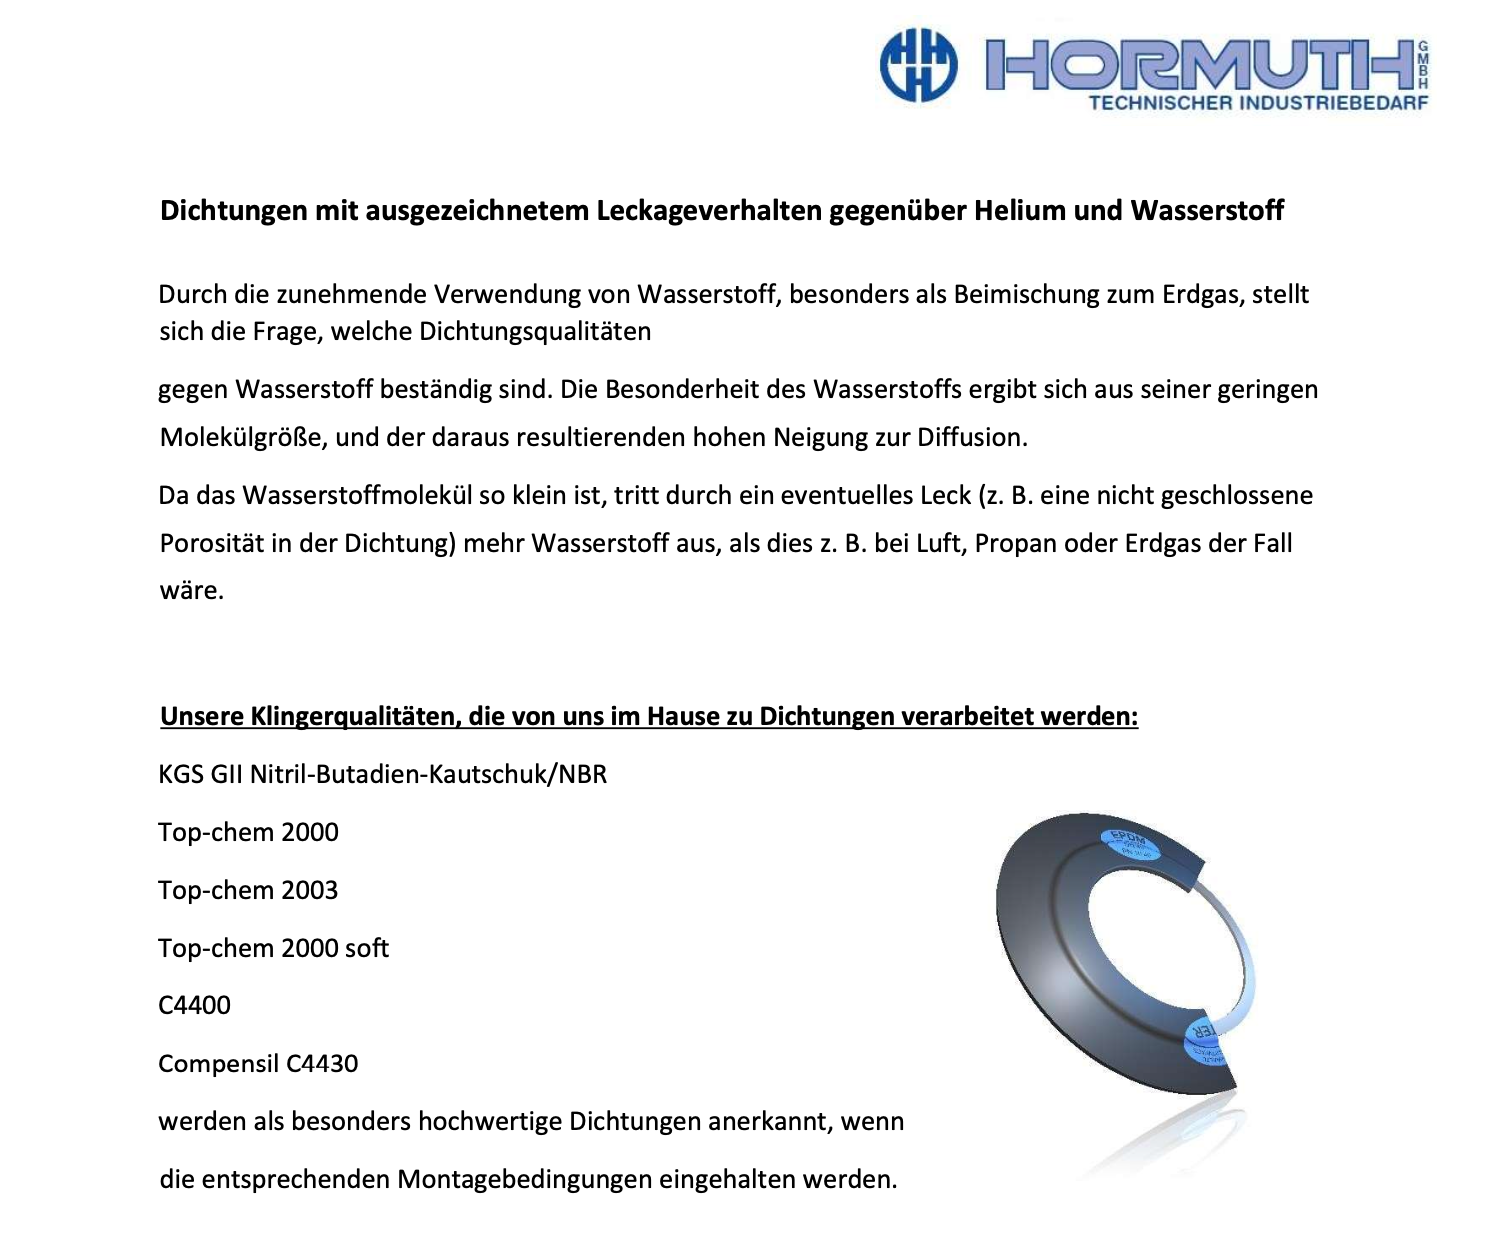 Hormuth-GmbH-Technischer-Industriebedarf-Wasserstoffdichtungen_cover